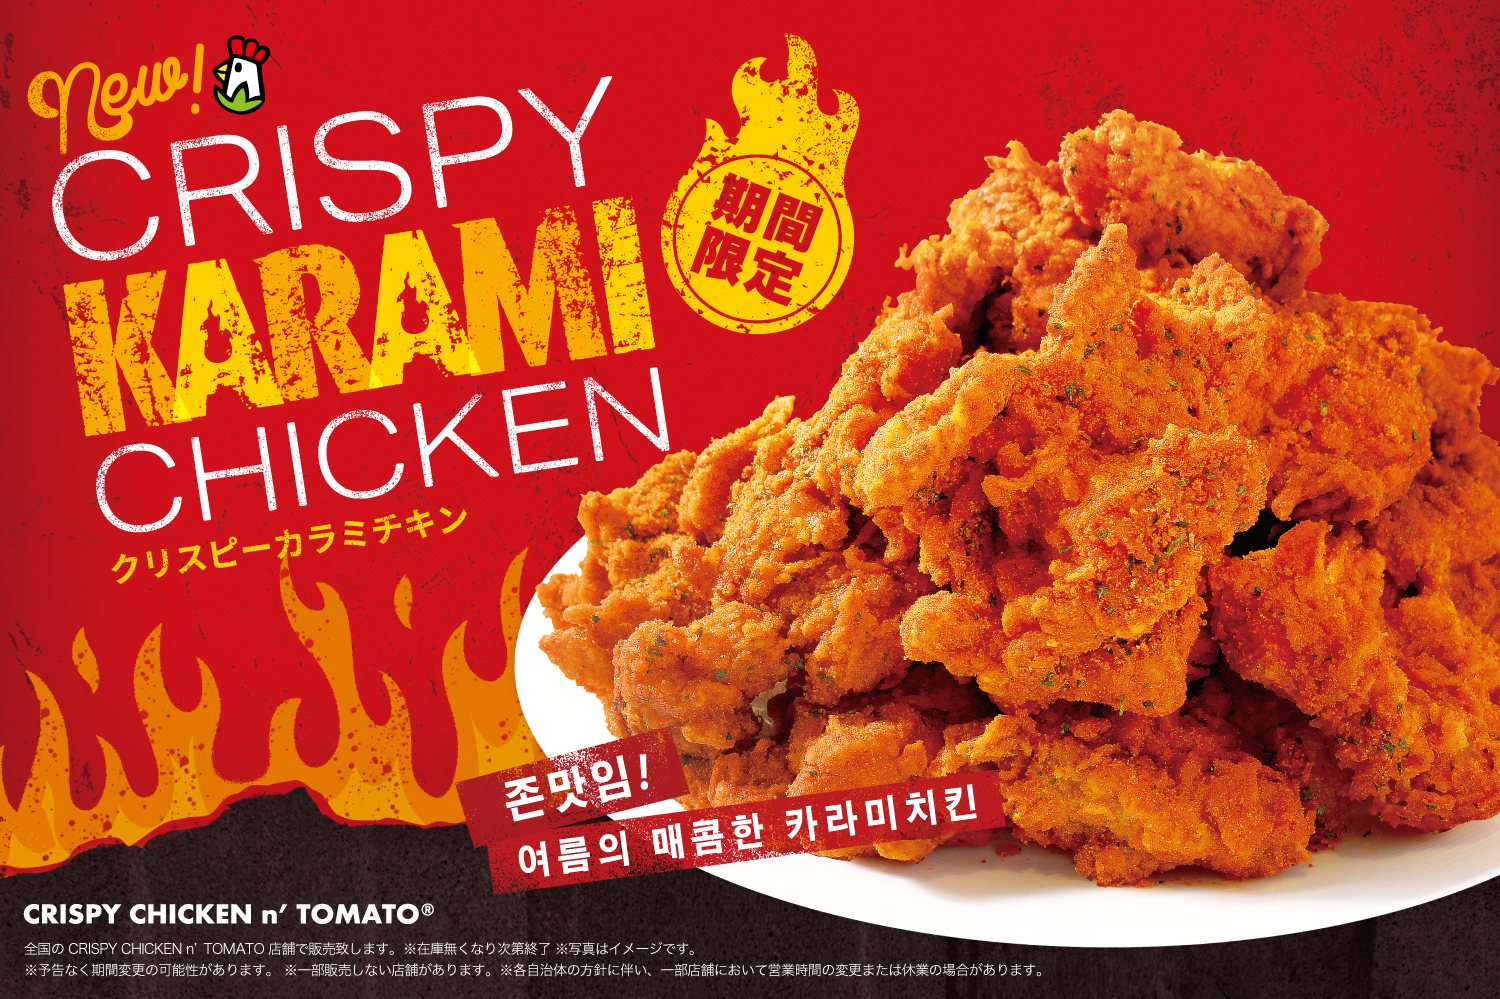 スパイシーな夏の魔物 韓国フライドチキンブランド Crispy Chicken N Tomato より Crispy Karami Chickenが7 火 期間限定で販売開始 株式会社e Mateのプレスリリース